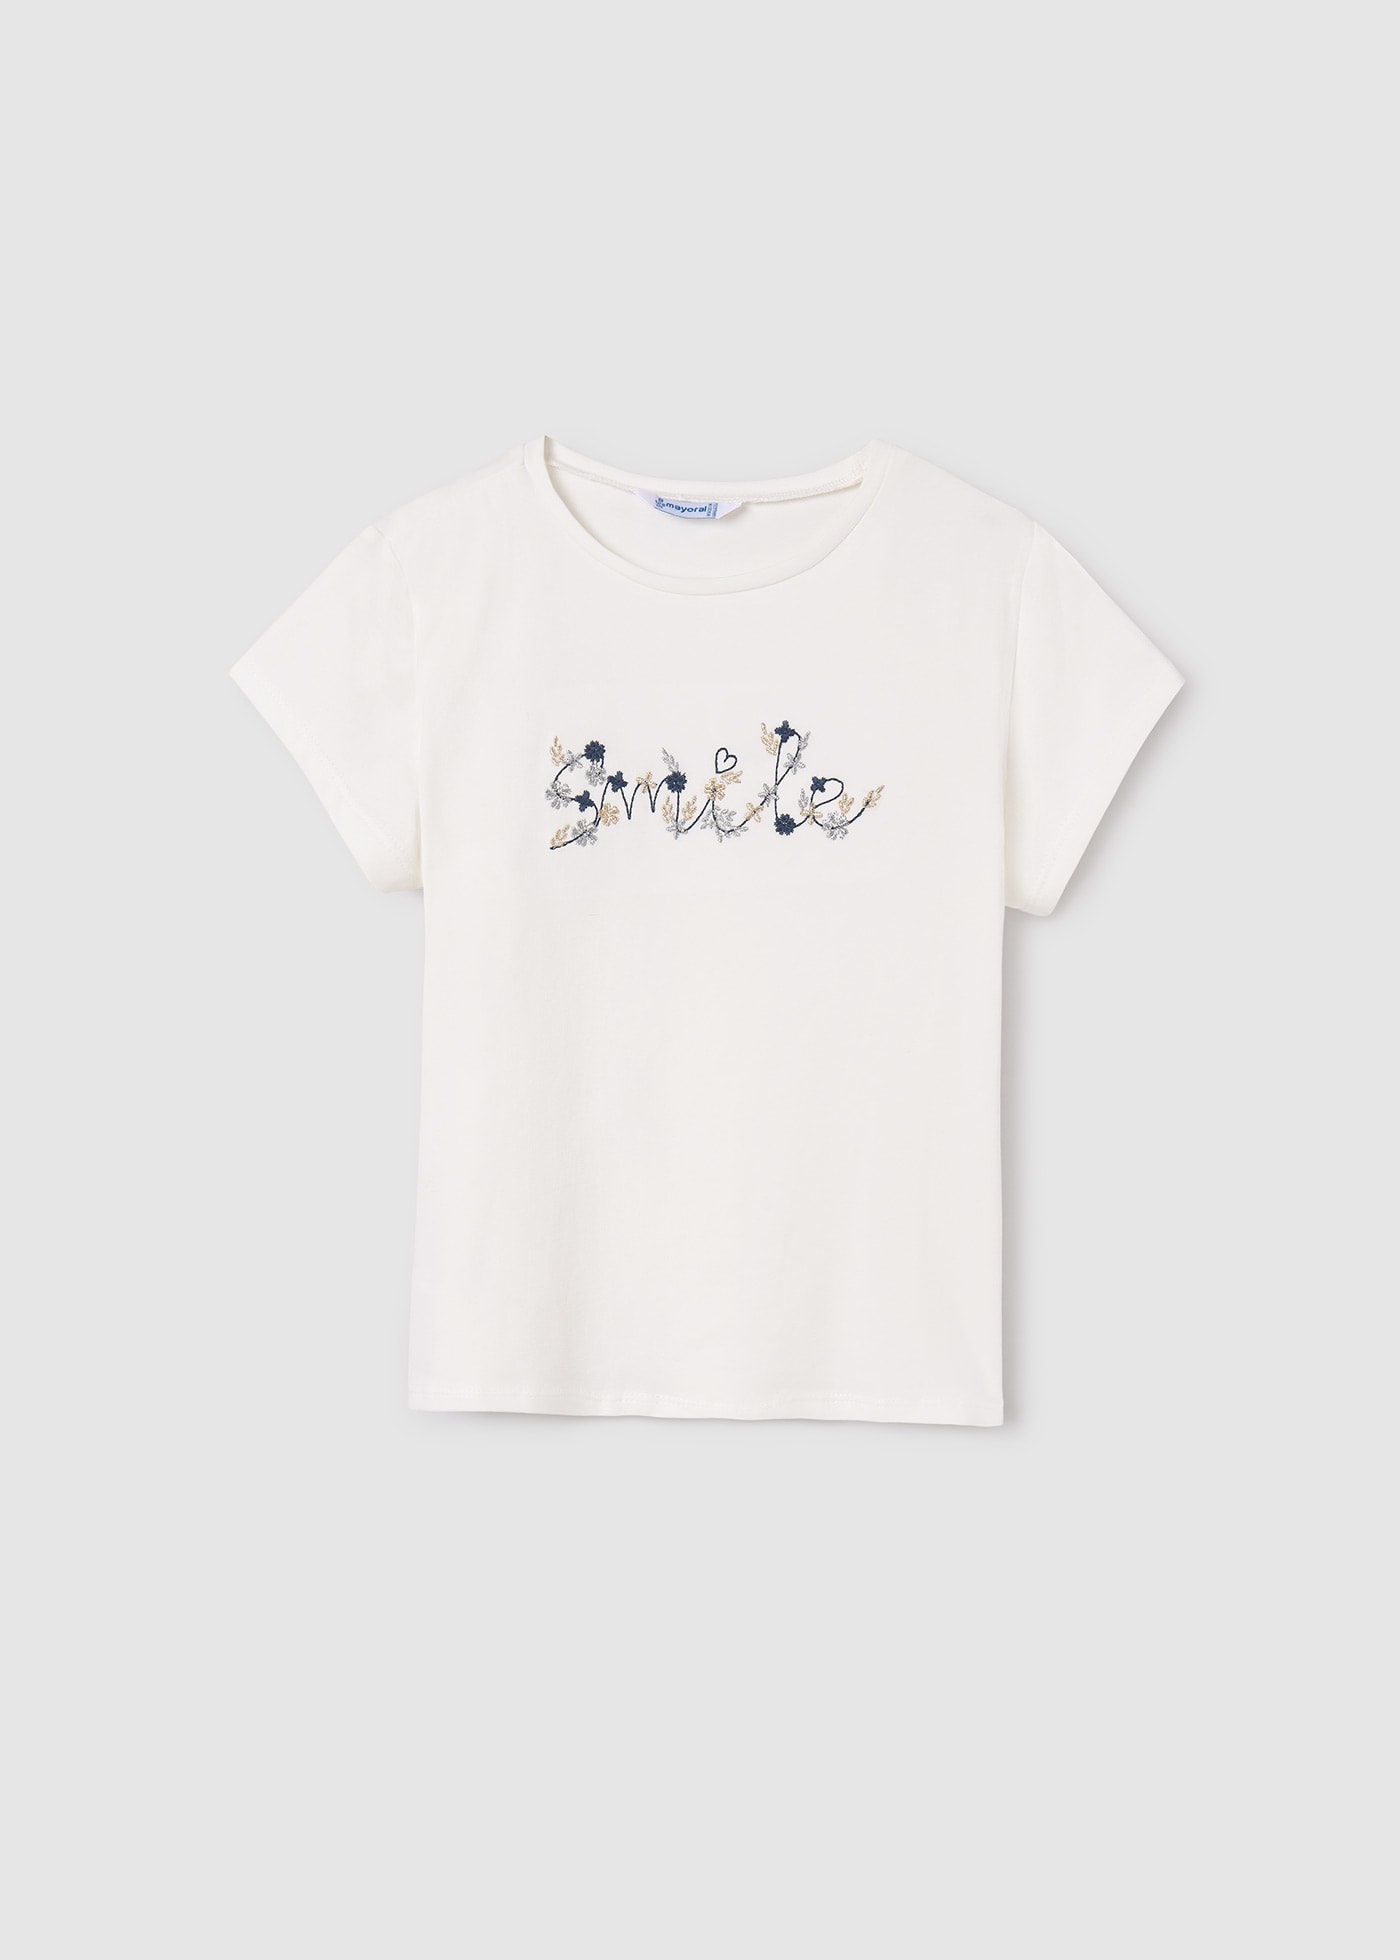 T-shirt texte brodé Better Cotton fille